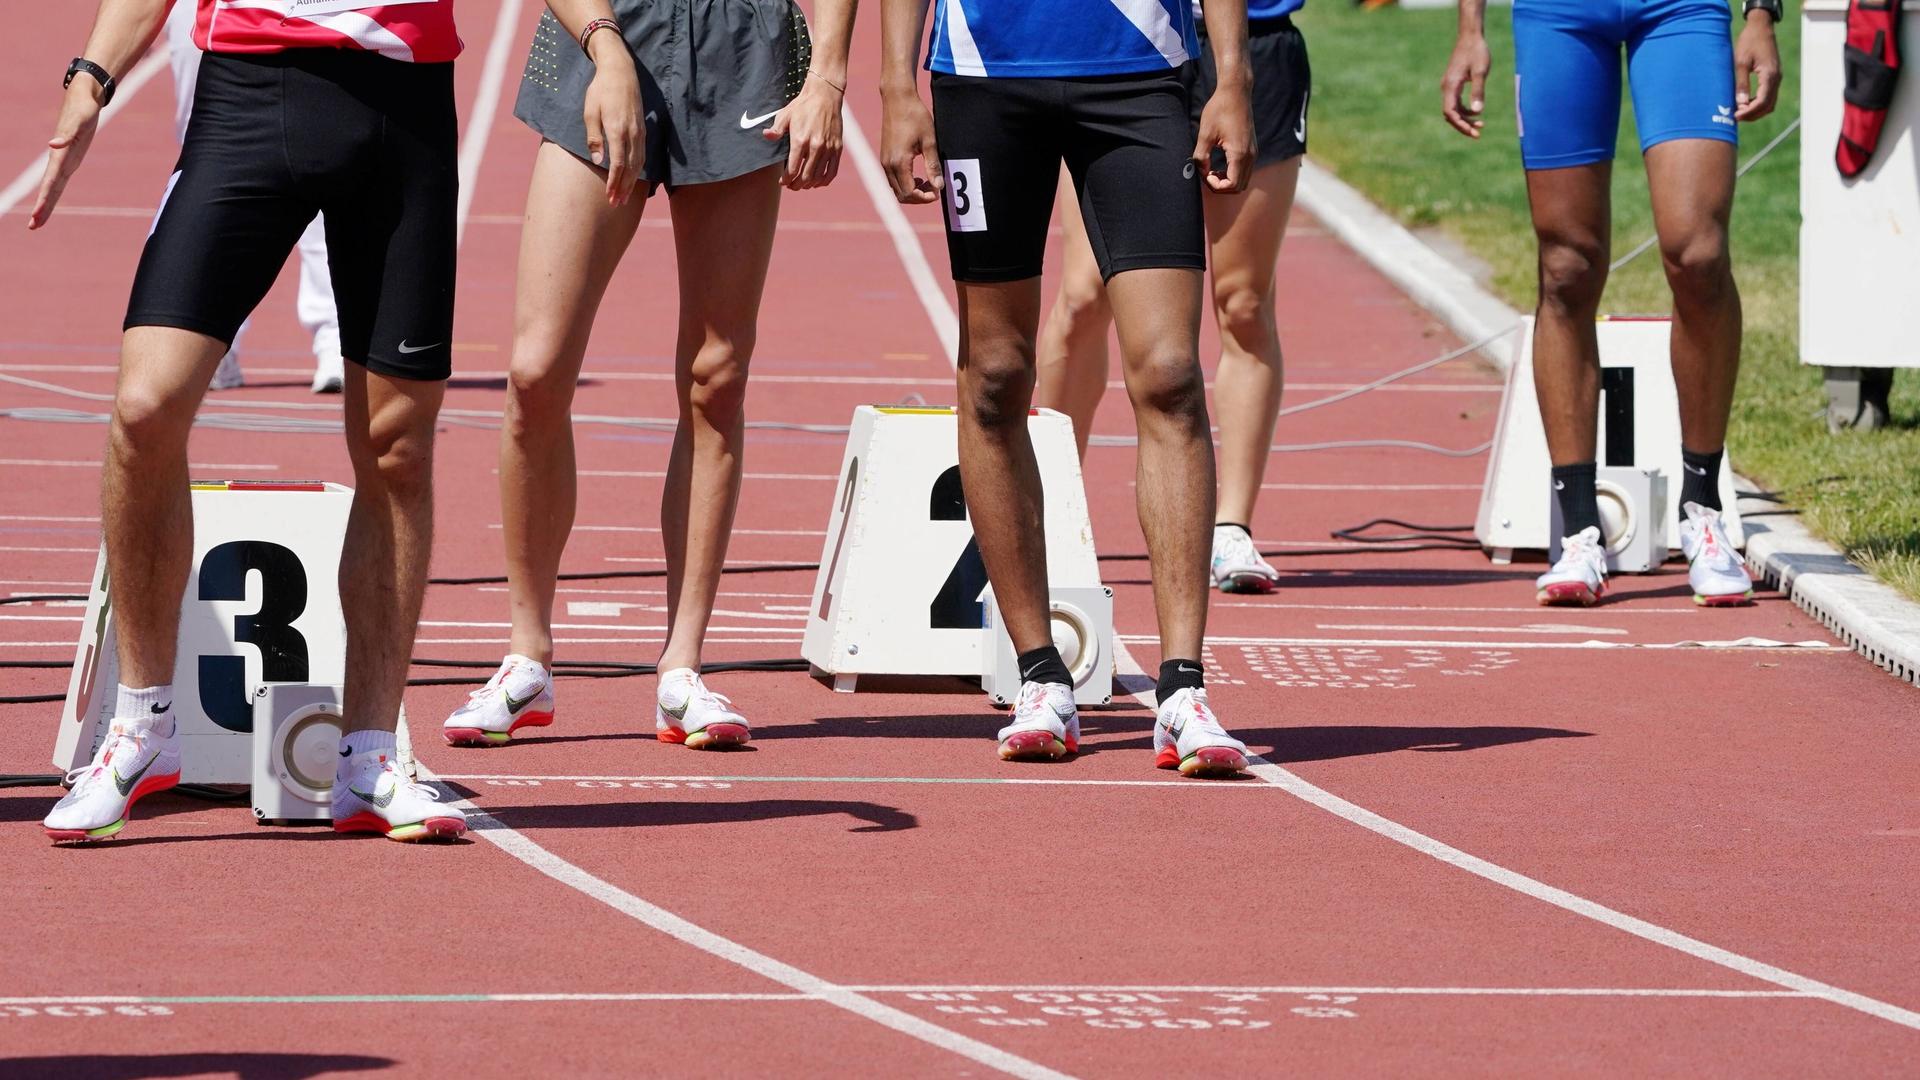 26.05.2022 Langenthal Schweiz: Leichtathletik Auffahrts-Meeting. Detailaufnahme Beine der Läufer vor dem Start.